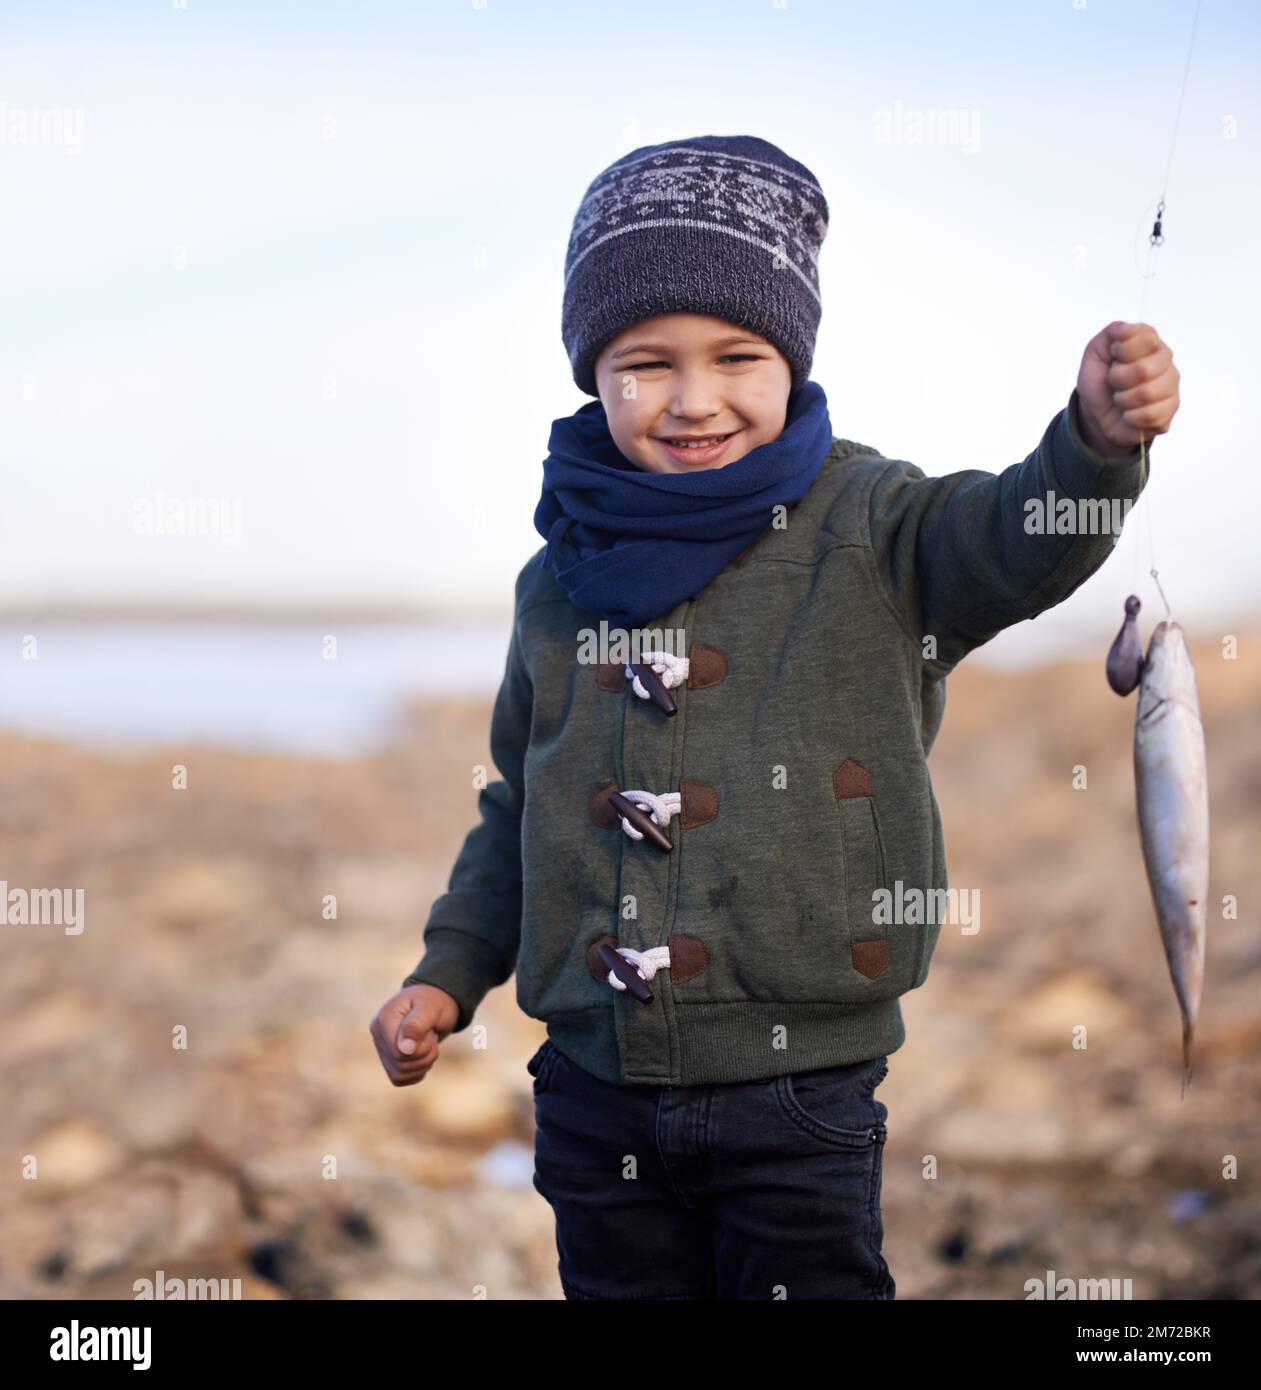 Guardate questo piccolo ragazzo. un ragazzino carino che tiene il pesce che ha pescato. Foto Stock